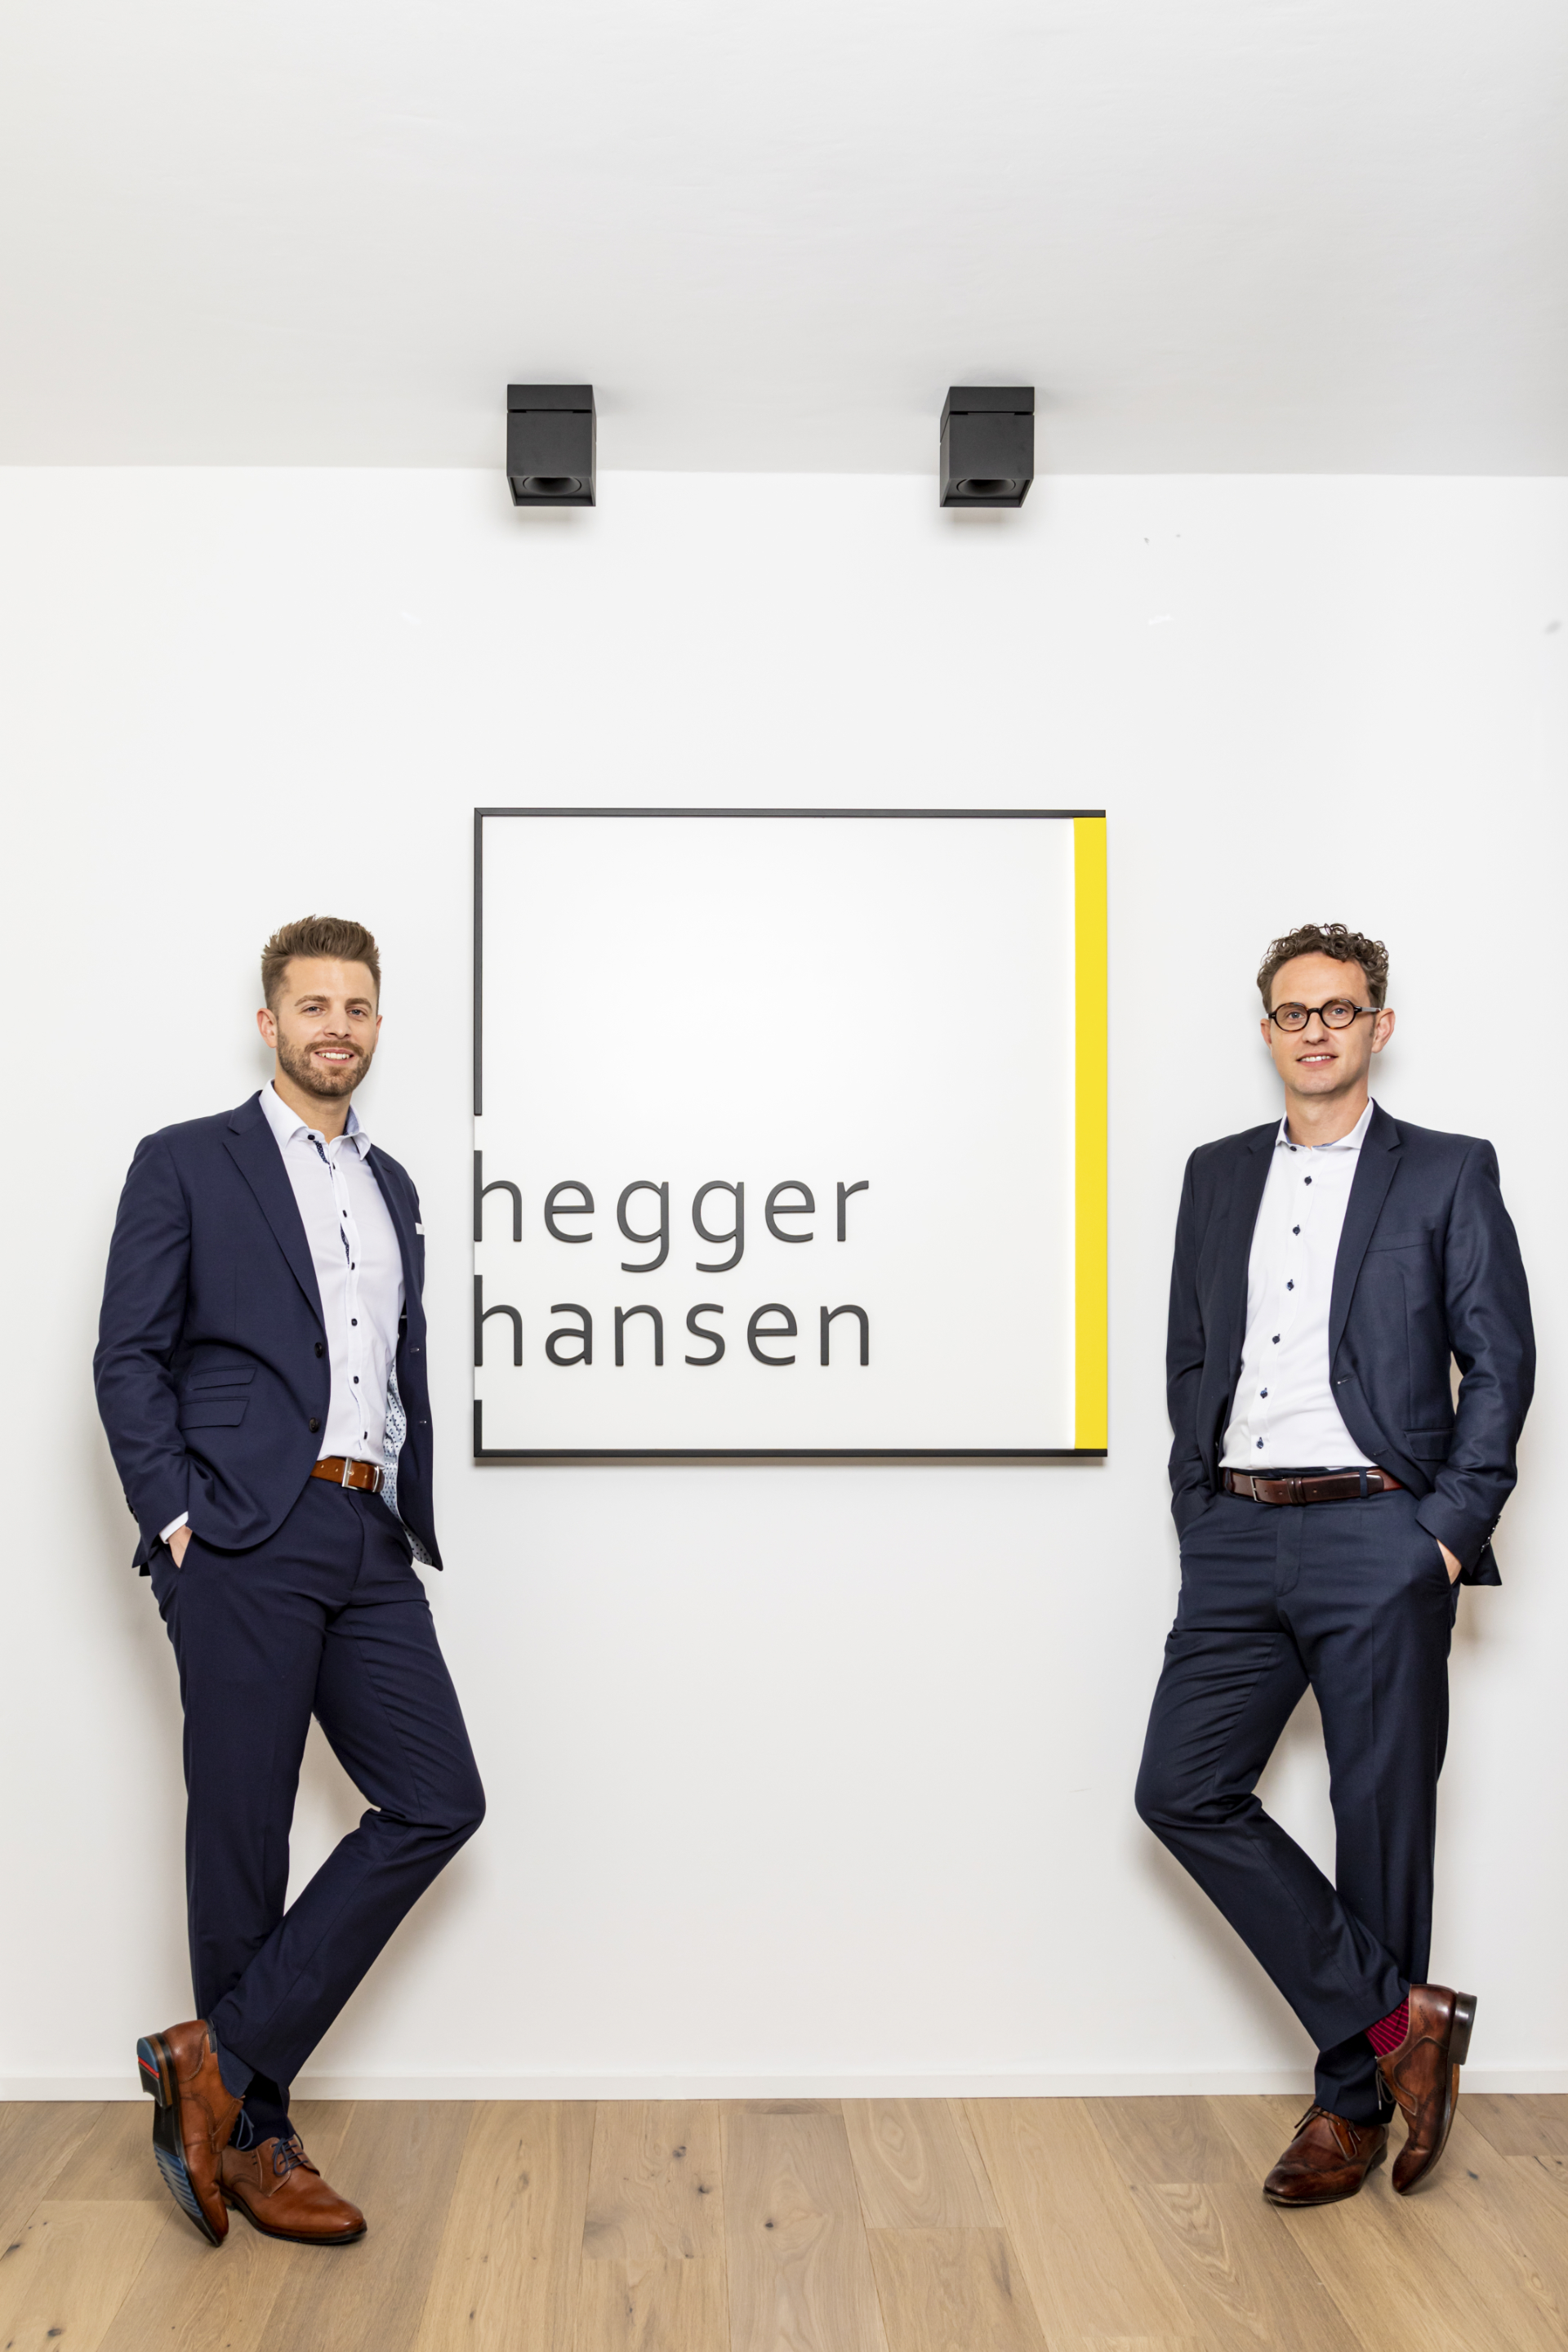  Hegger Hansen Steuerberatung: Betriebsprüfung, Einkommensteuer